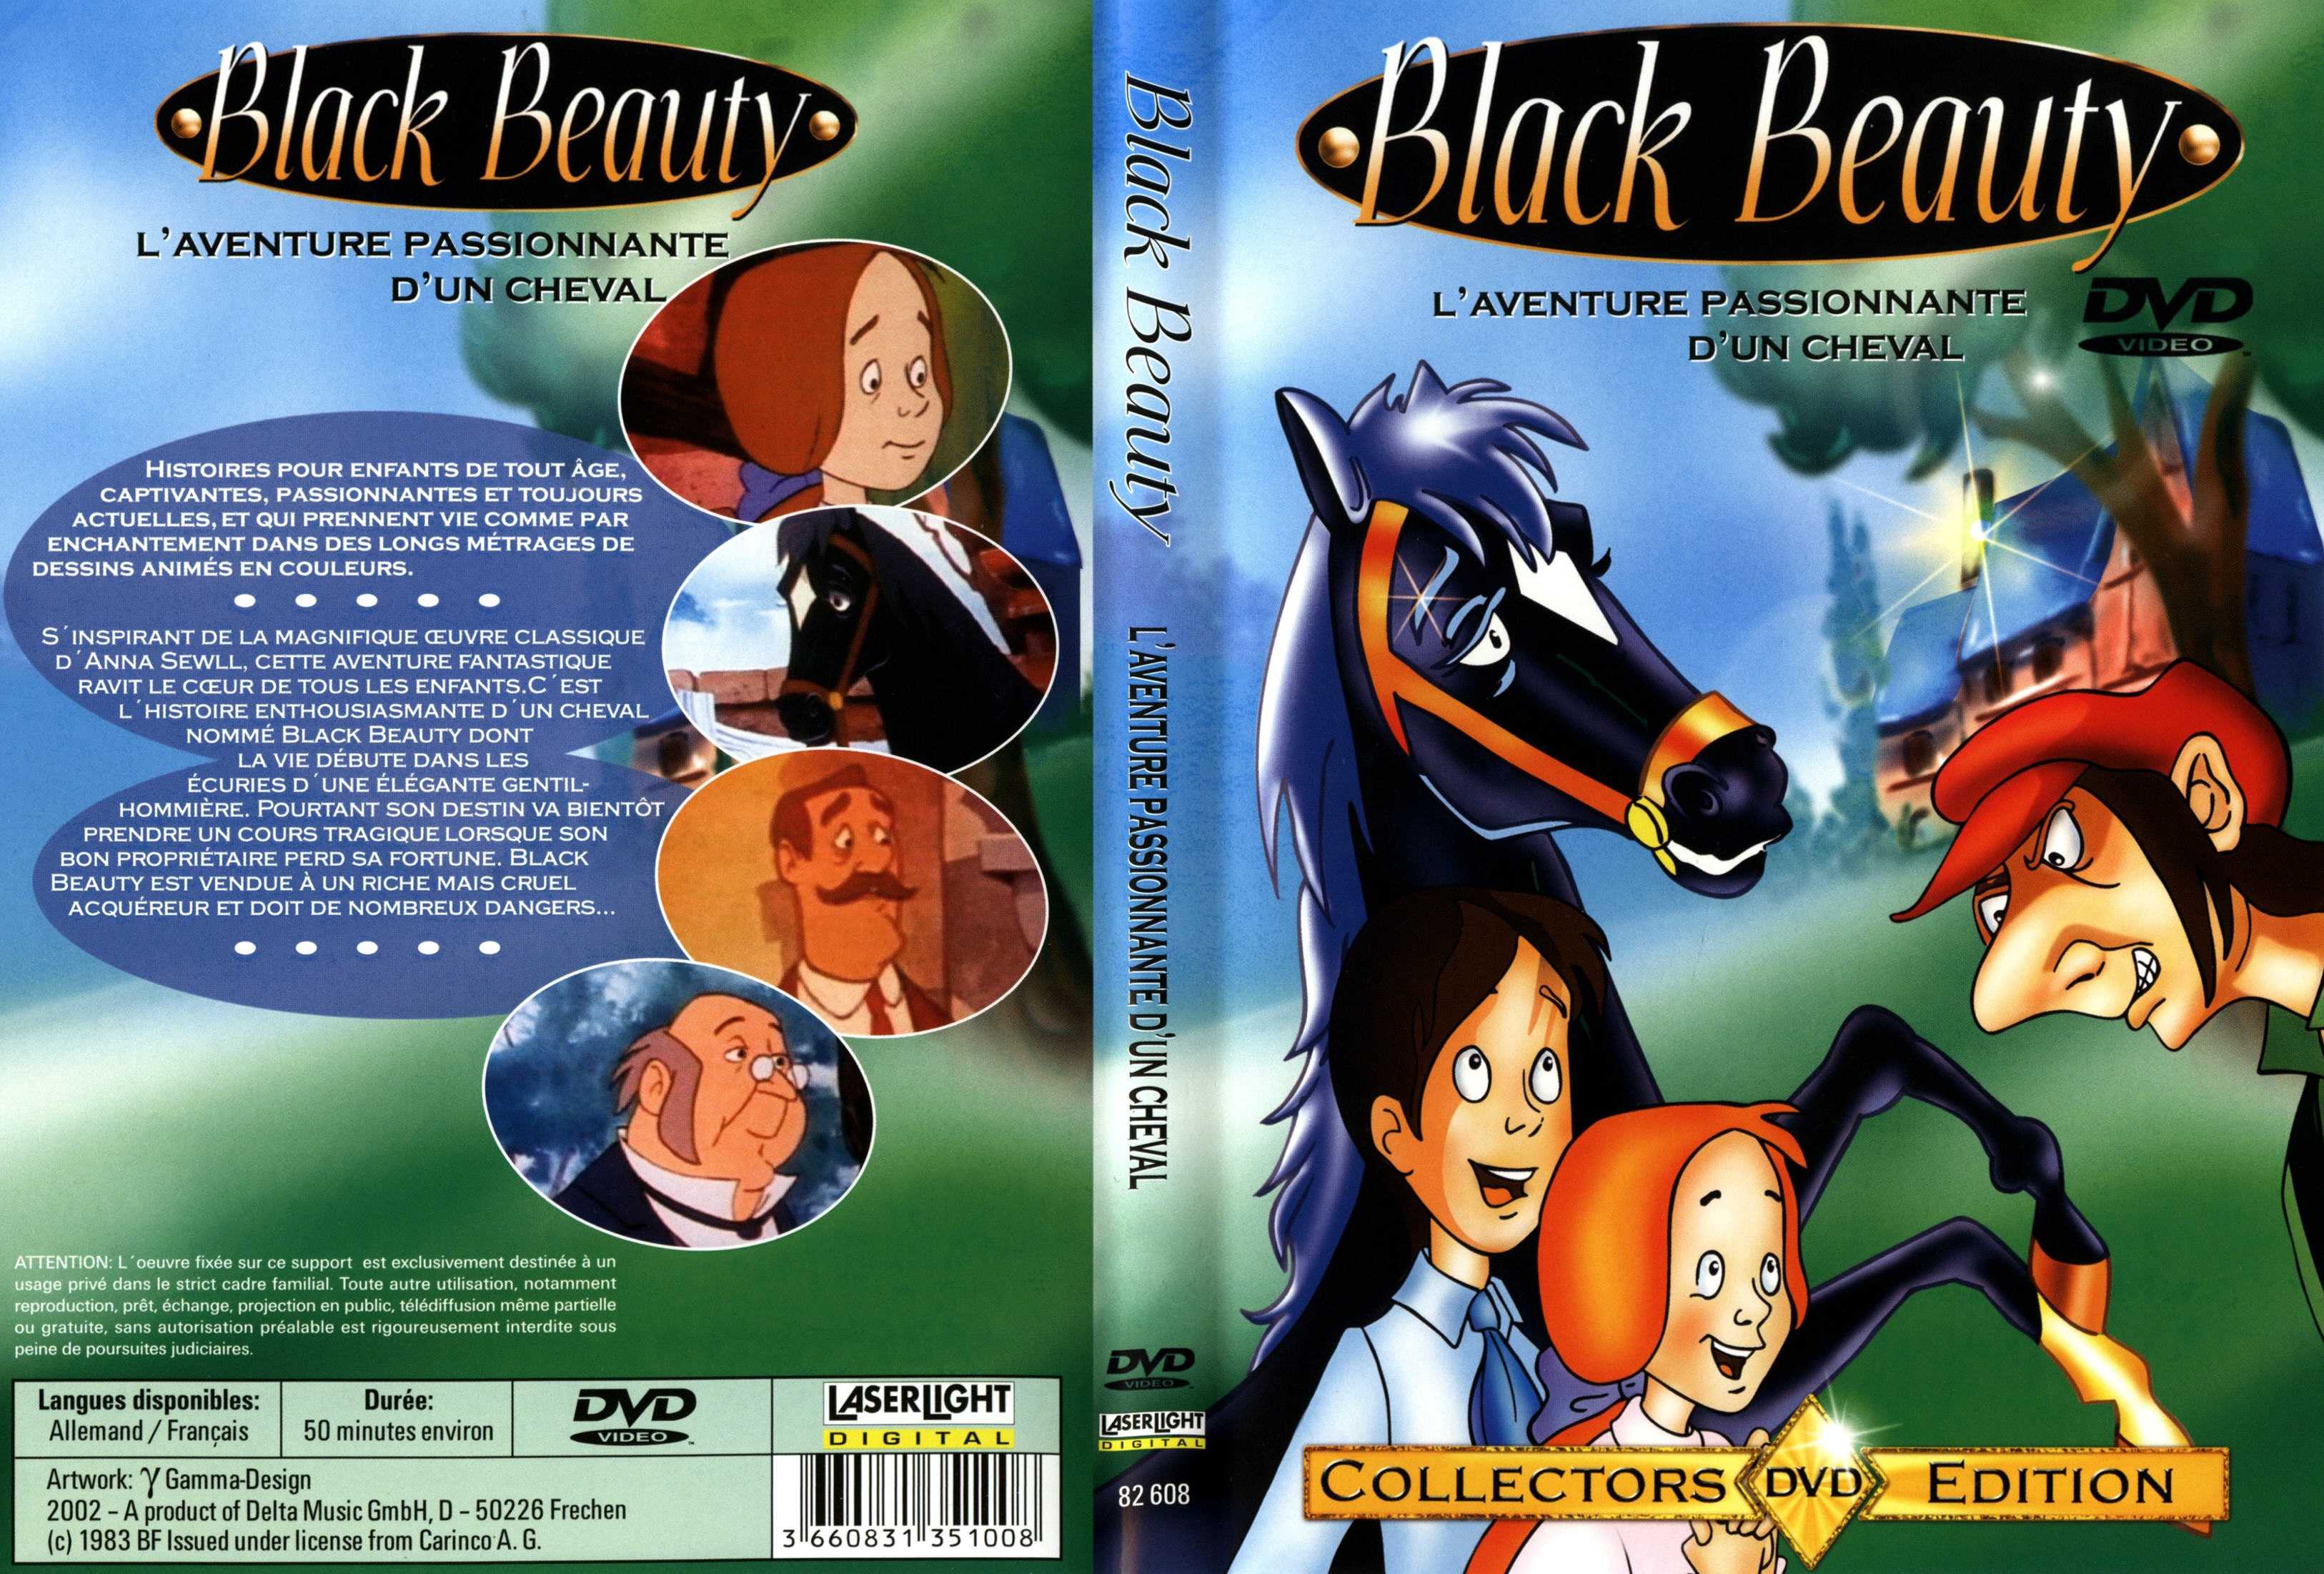 Jaquette DVD Black beauty